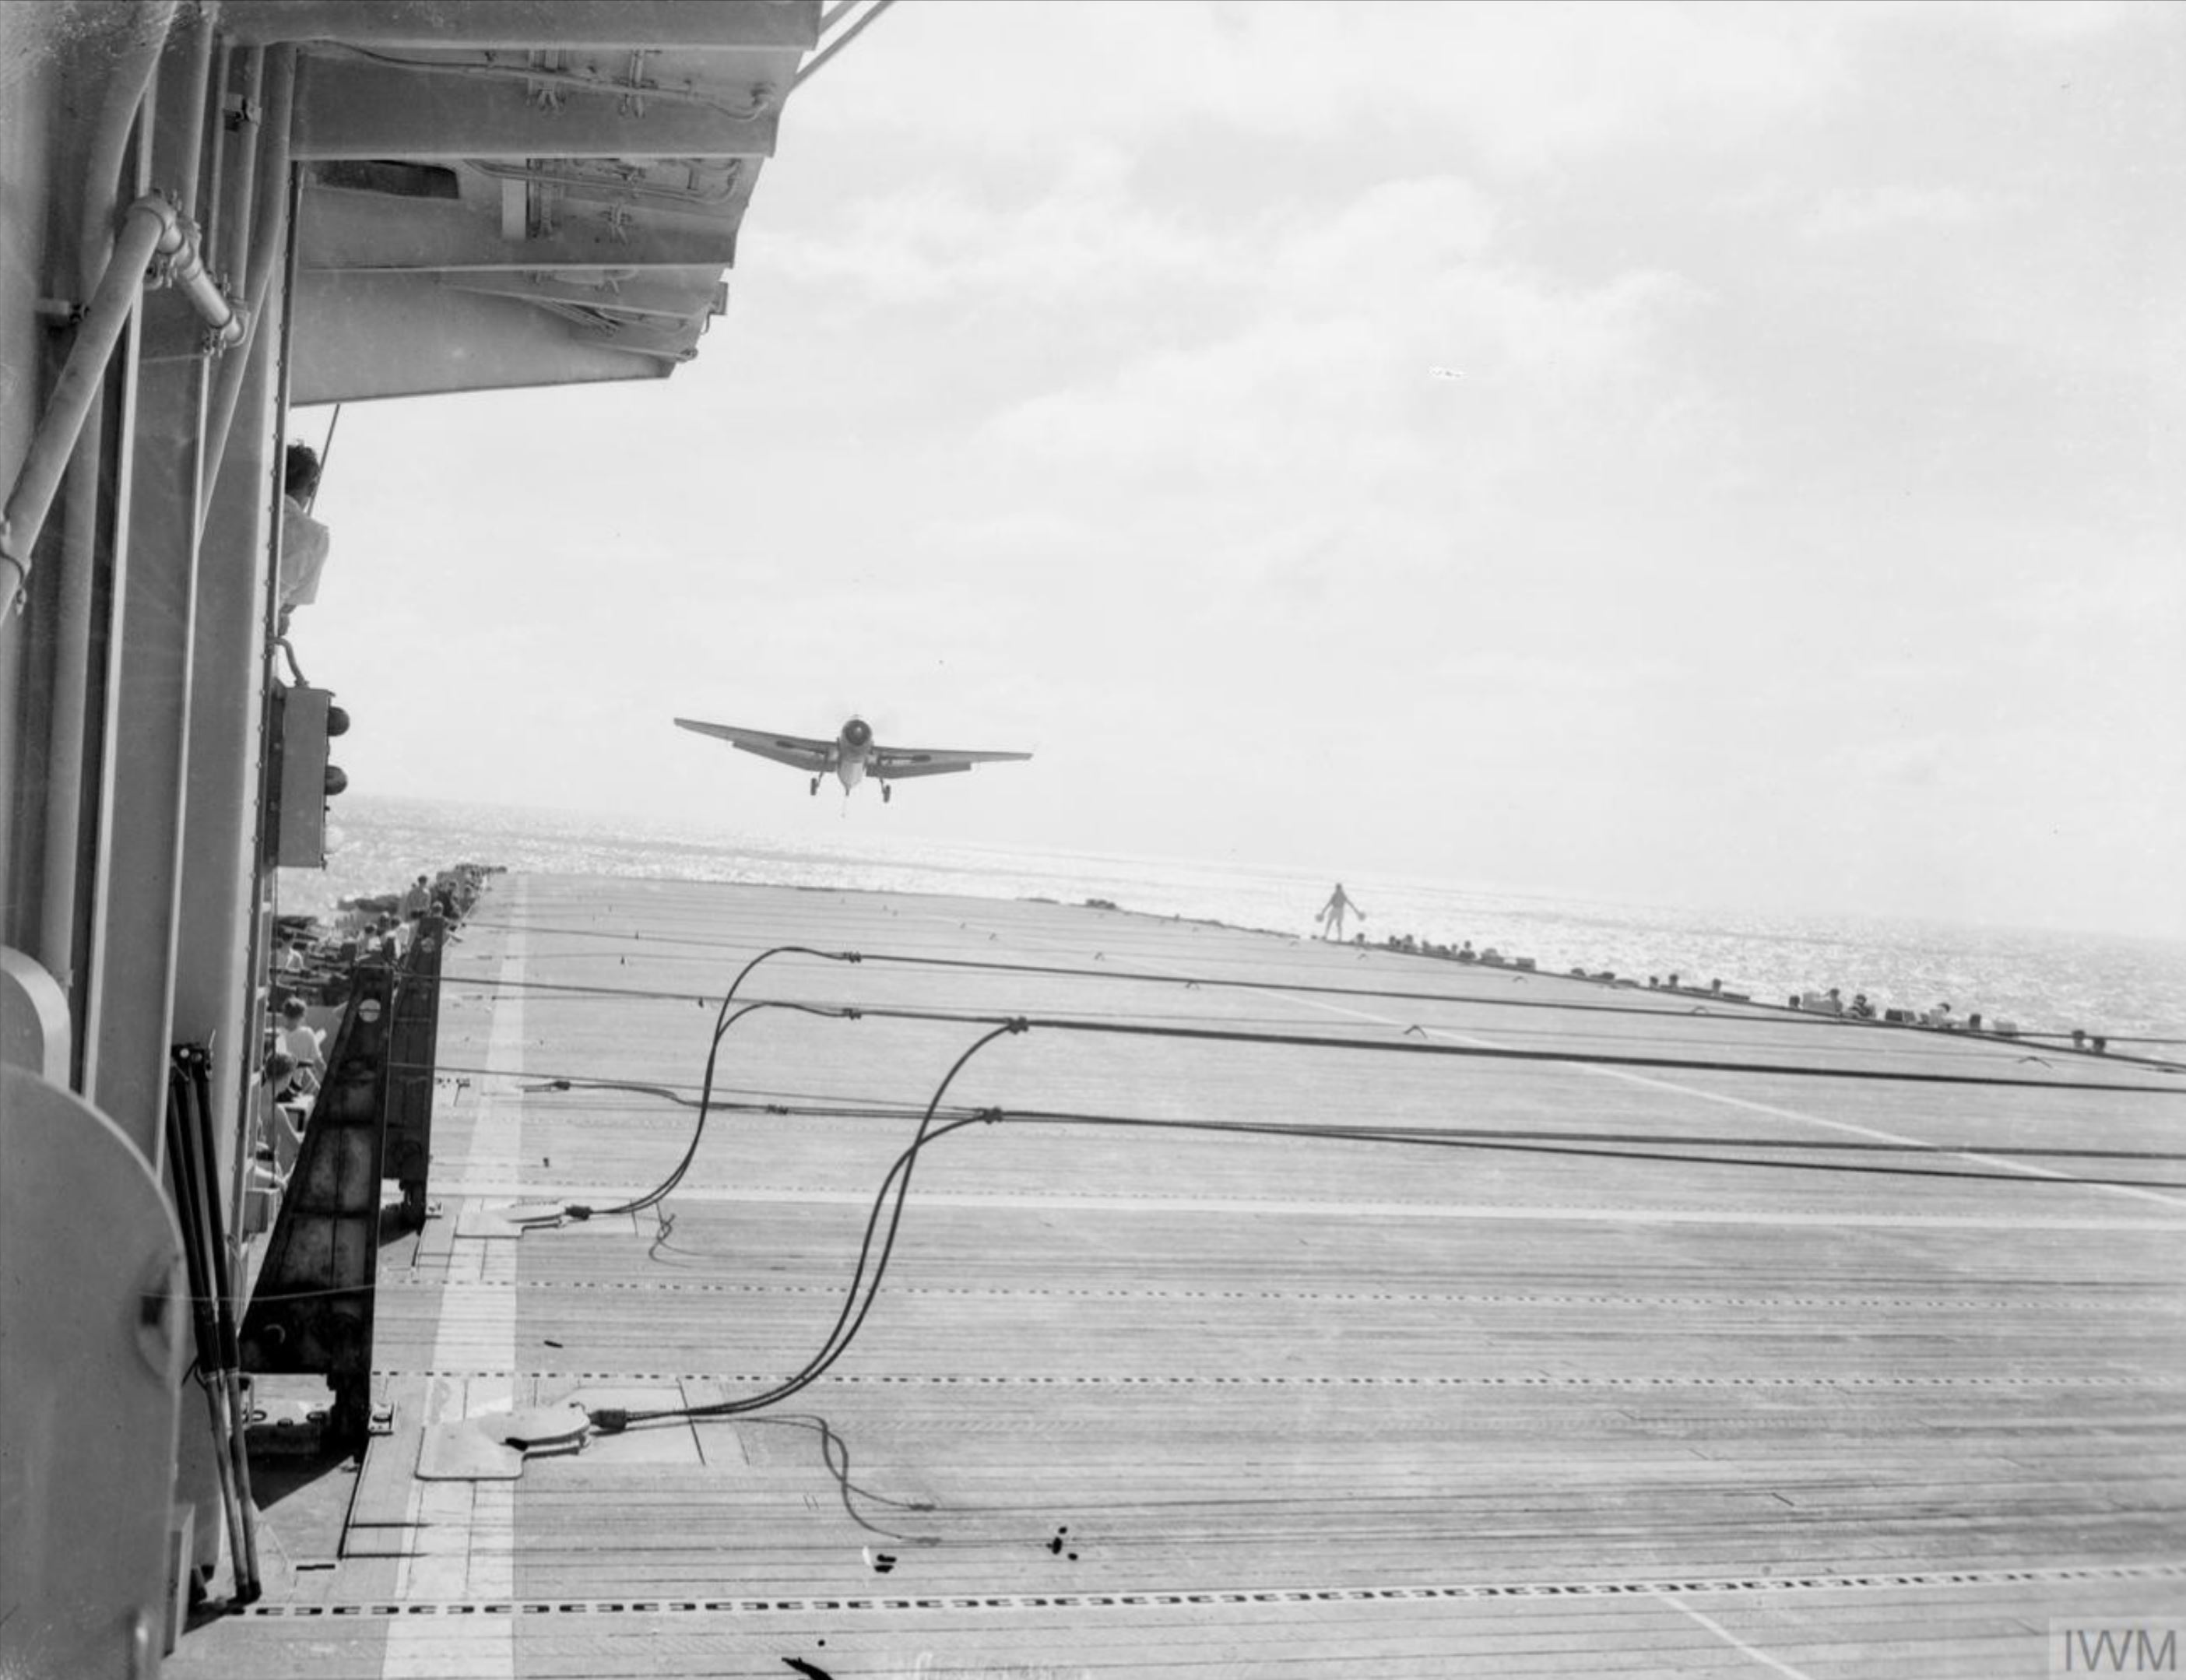 Fleet Air Arm Avenger Tarpon landing aboard HMS Shan eastern waters Feb 1945 IWM A27849